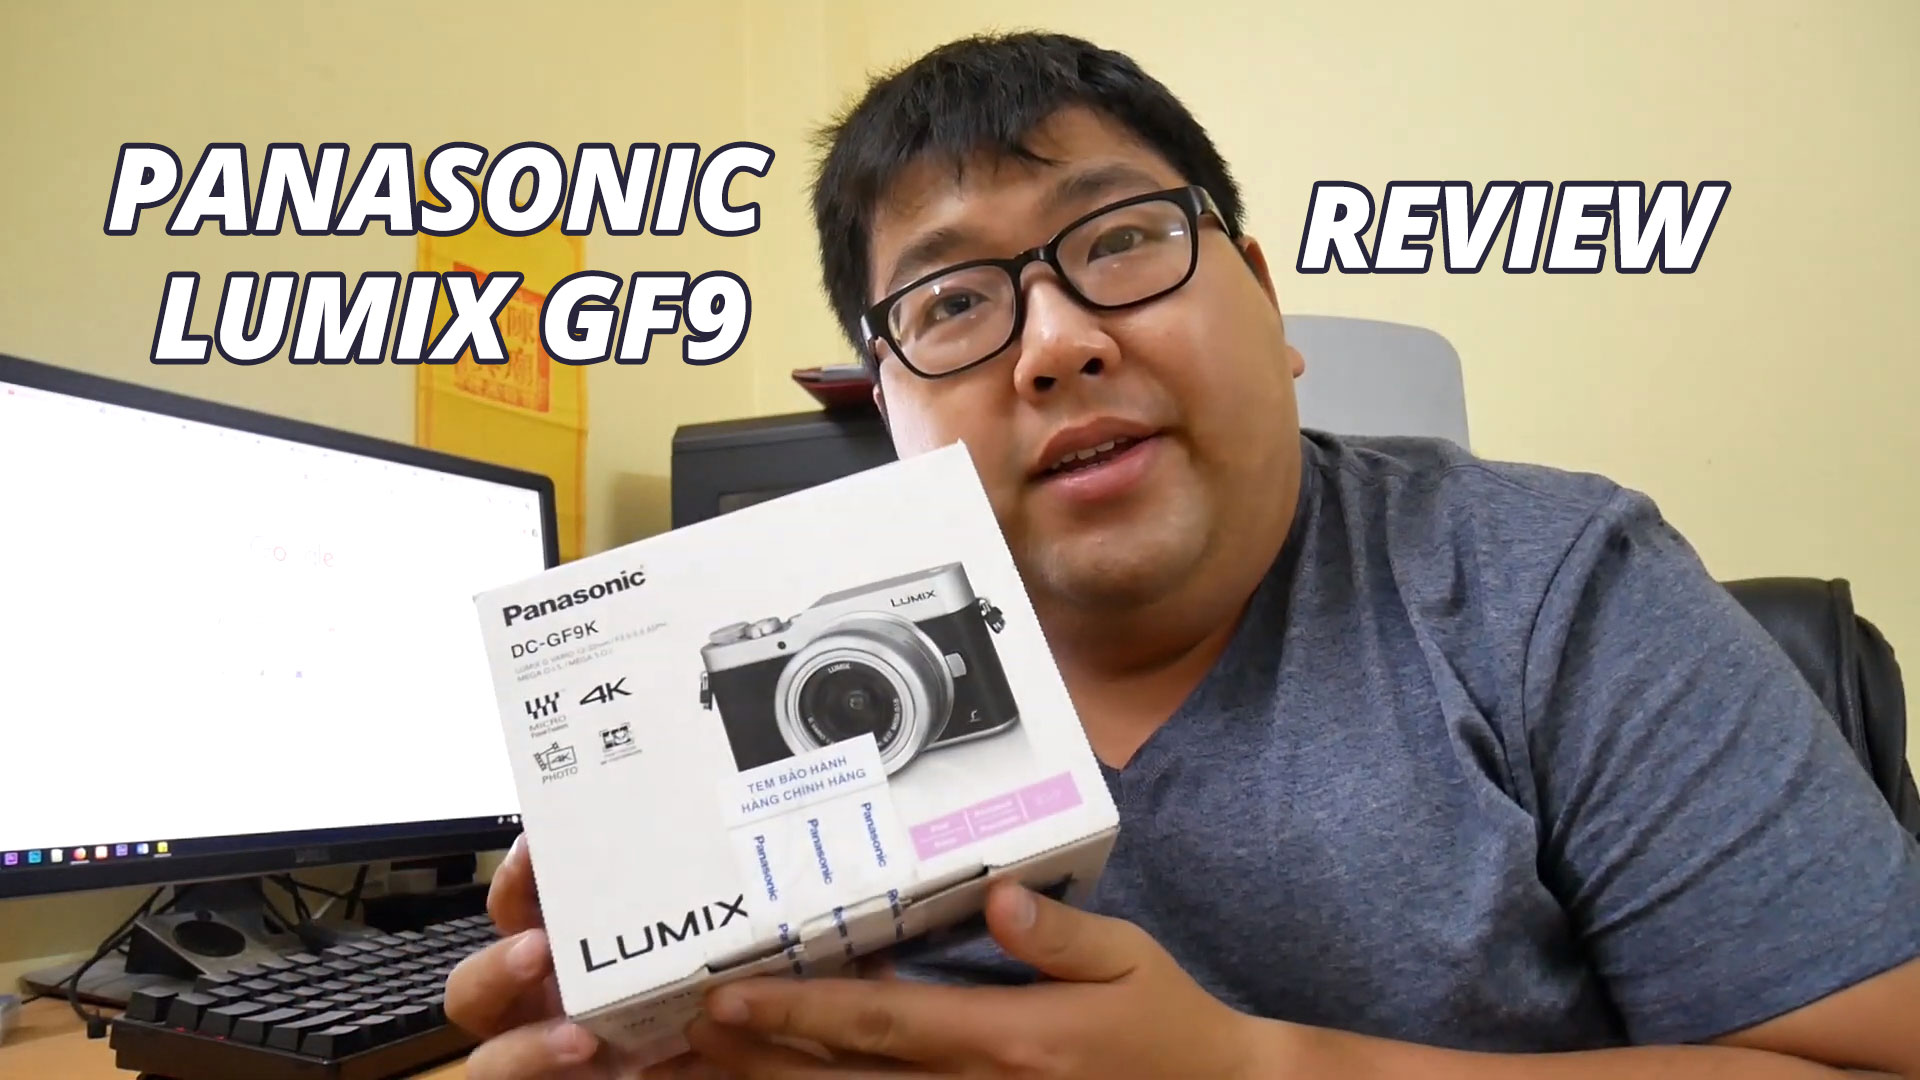 Nói nhanh về Panasonic lumix Gf9 so với a6300, mình định đổi sang Gf9